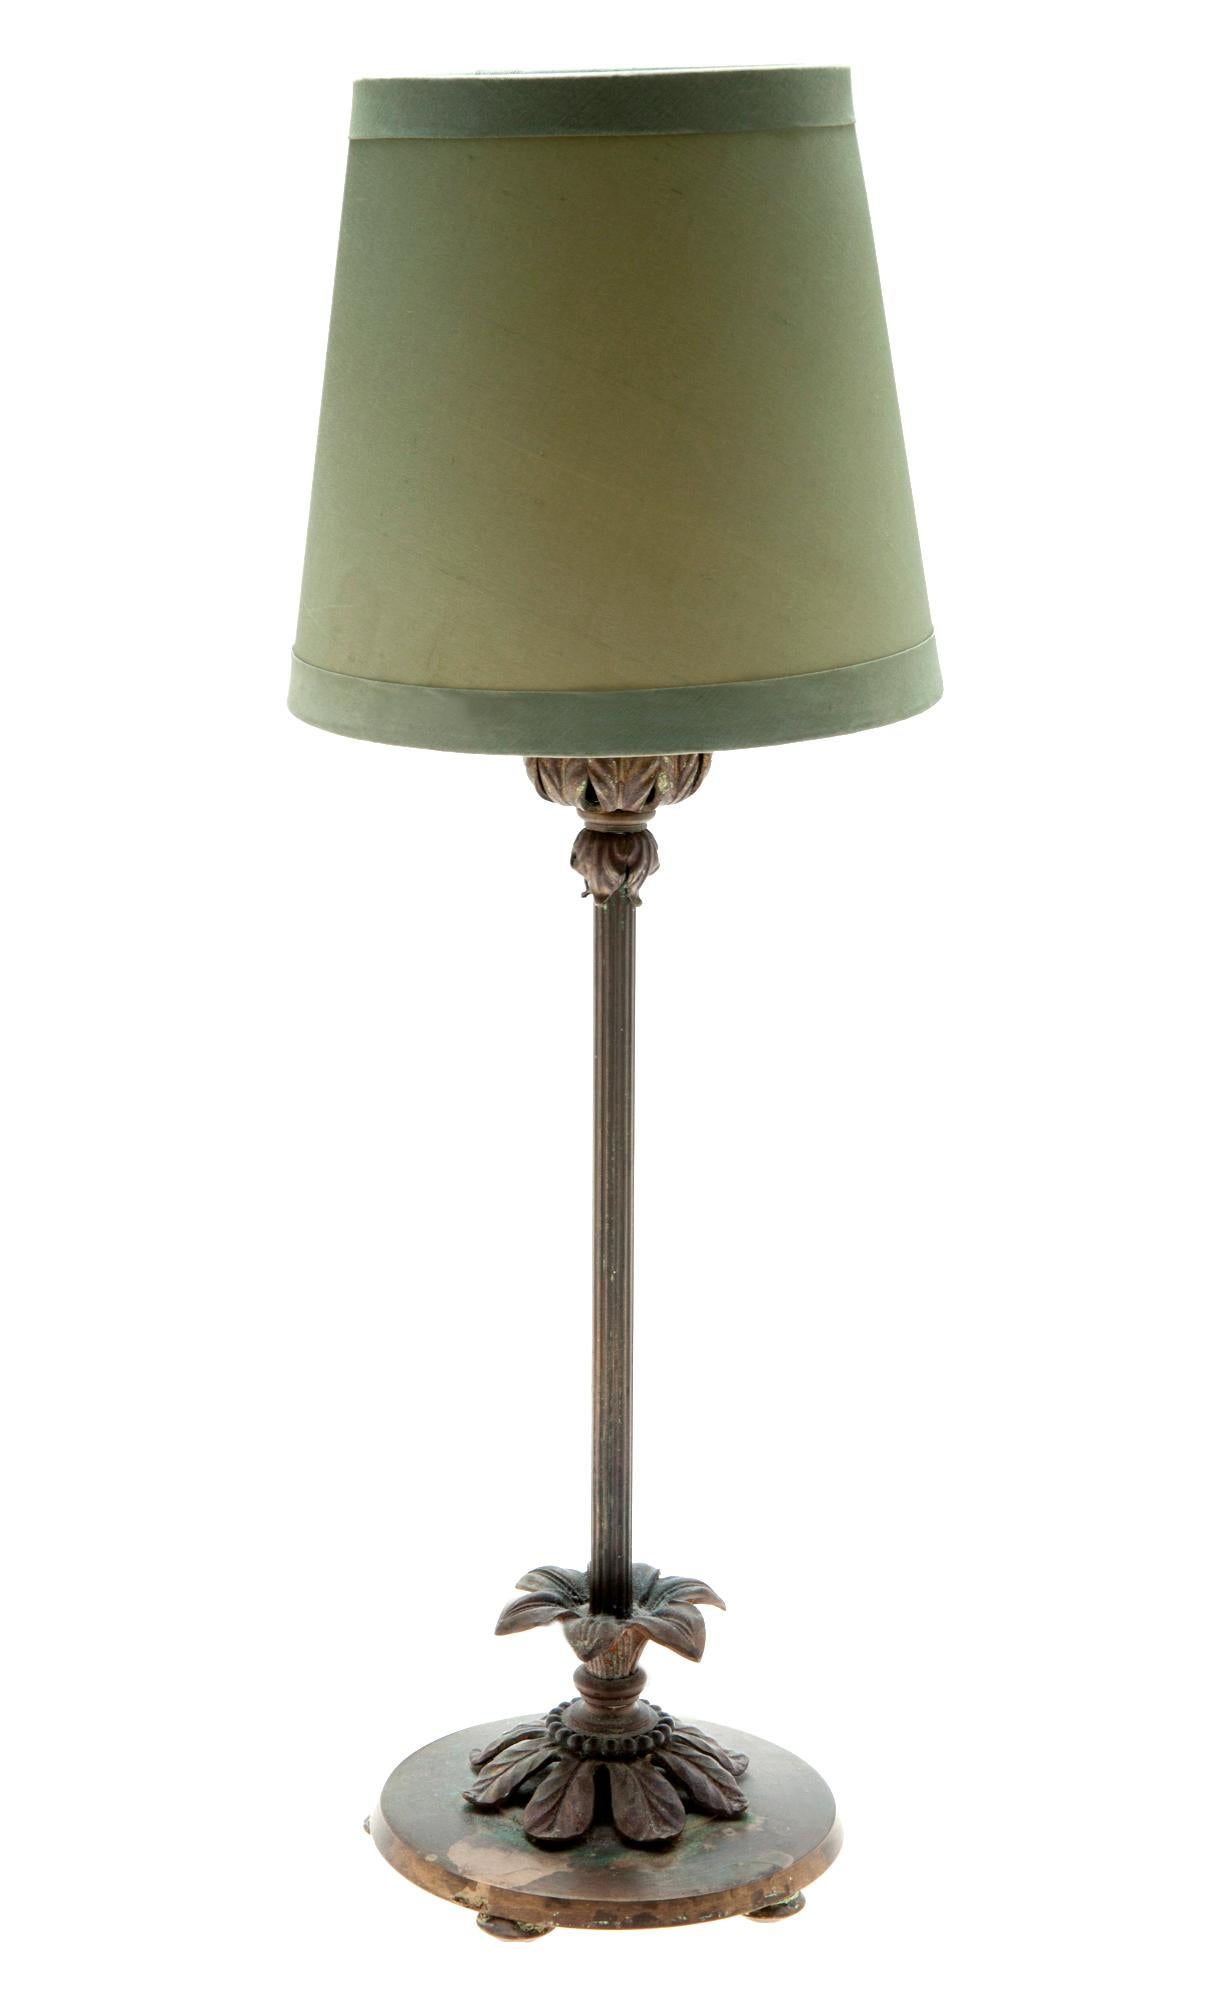 Kleine Boudoir-Lampe, ca. 1930er Jahre. Zungenrohr, originaler Ein-Aus-Schalter. Auf 4 flachen Füßen stehend. Neu verkabelt.
Farbton Größe:
6 